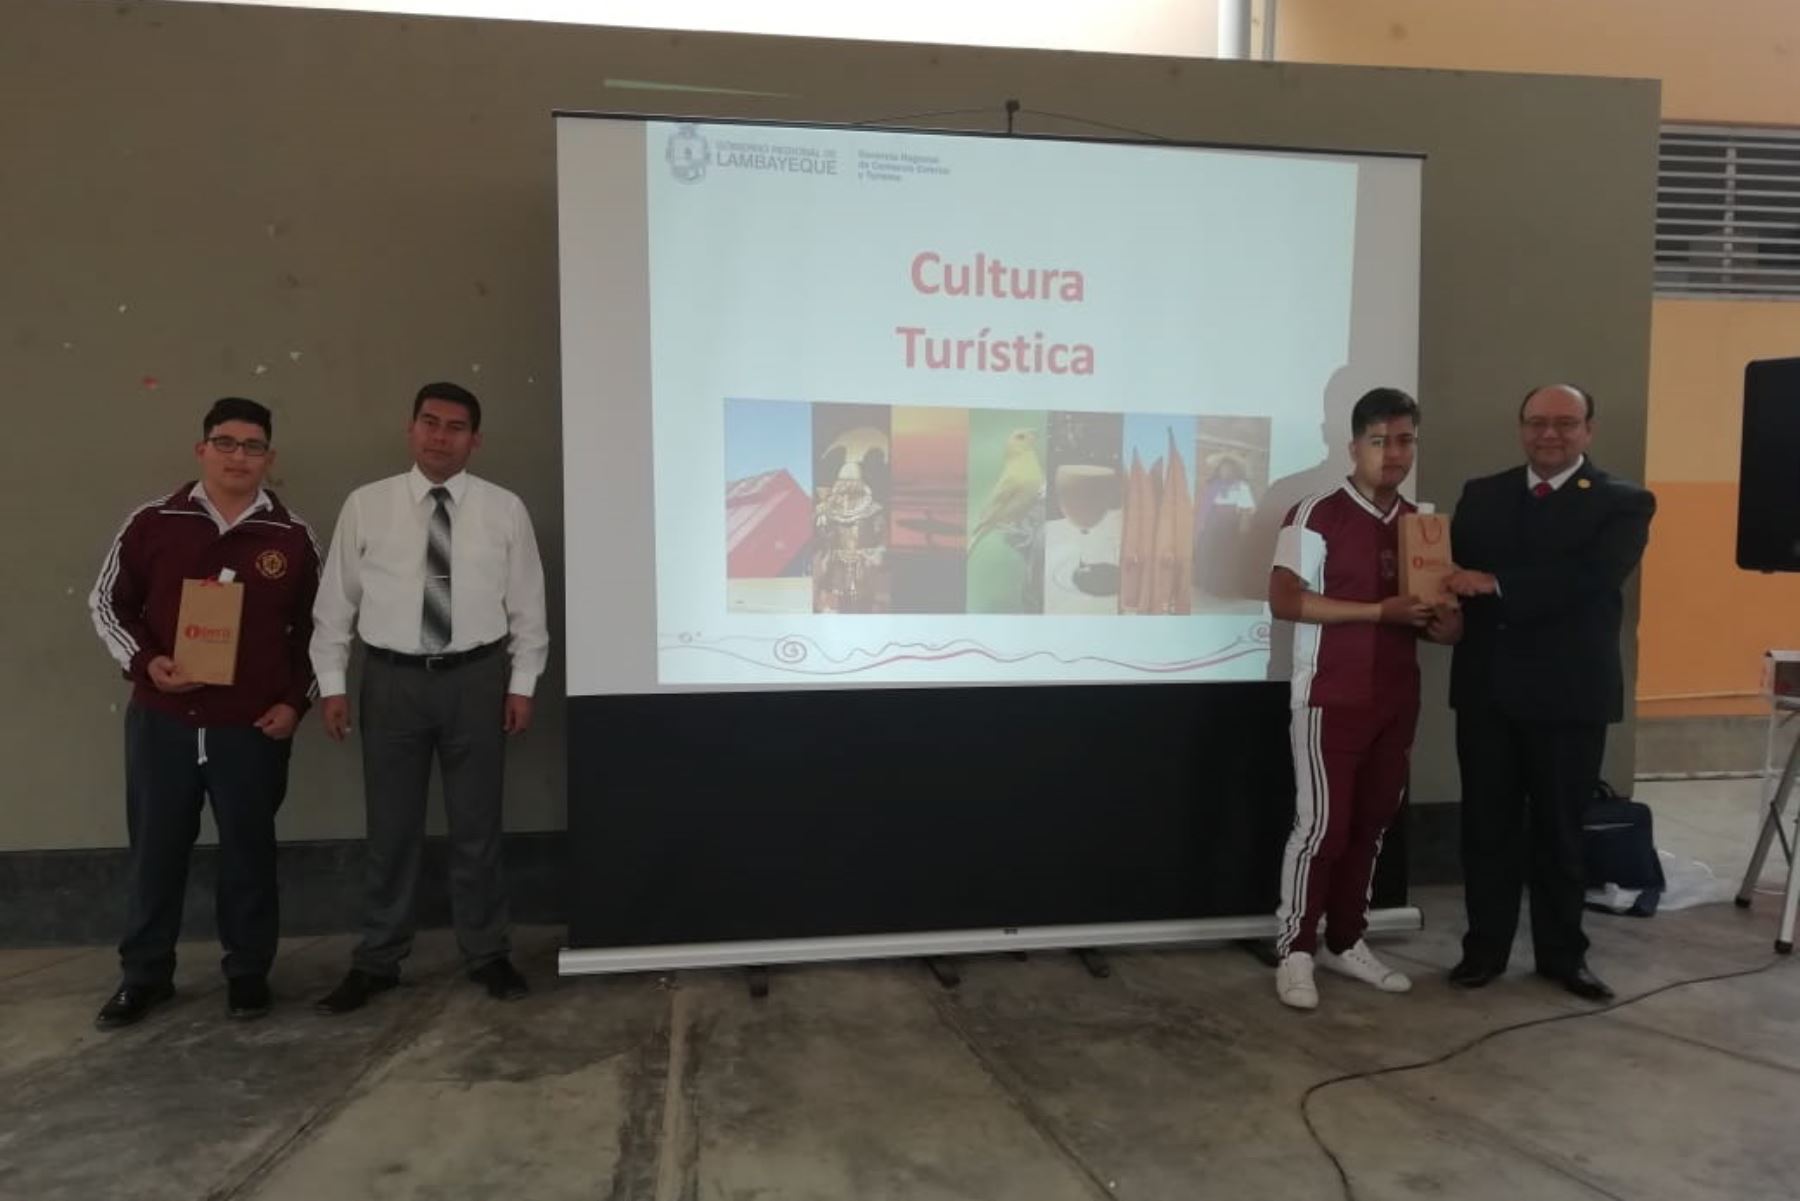 Más de 1,500 escolares de tercero a quinto de secundaria de Lambayeque han sido capacitados en cultura turística en lo que va del 2019.